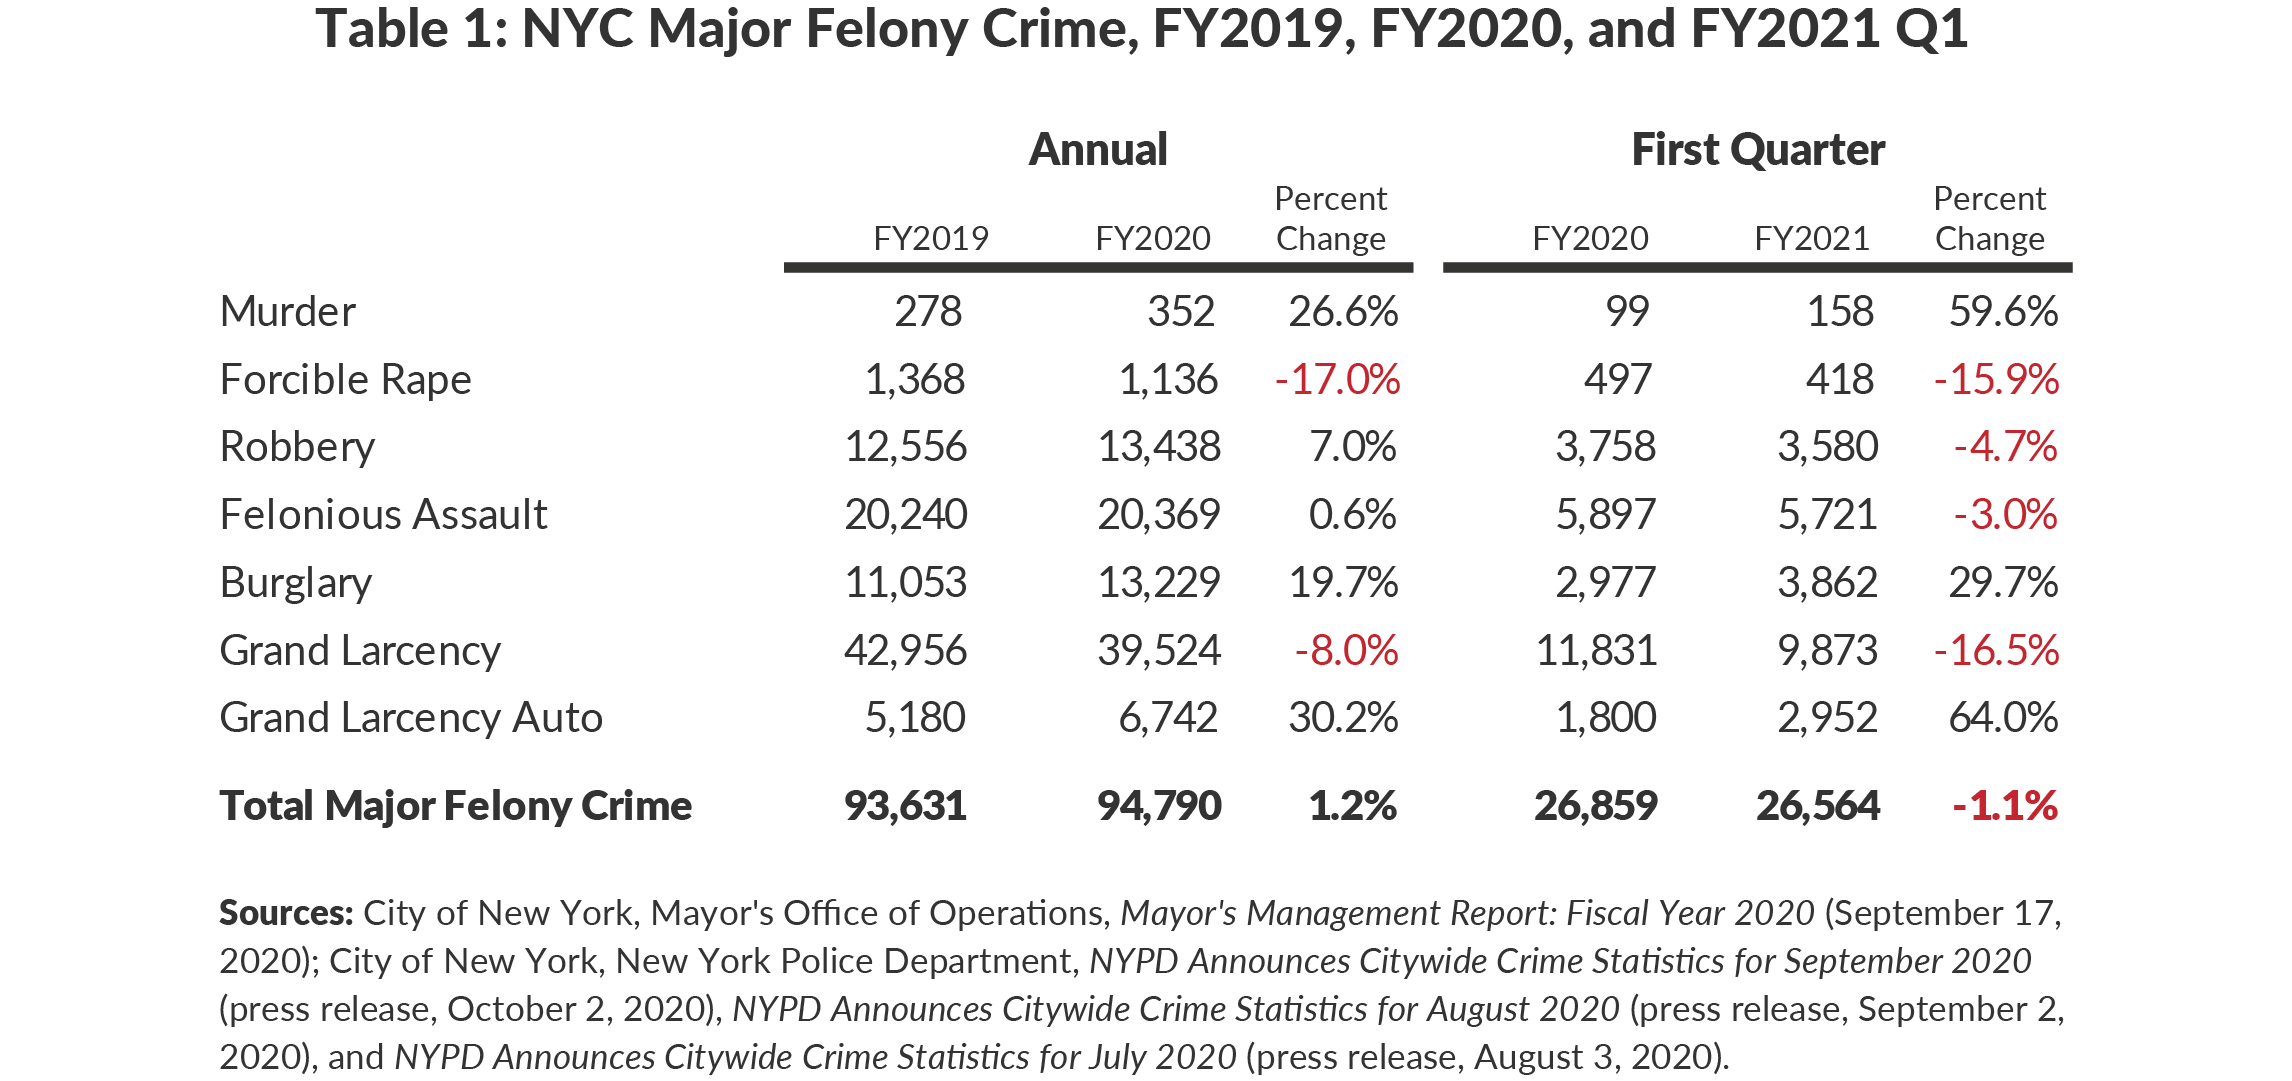 Table 1: NYC Major Felony Crime, FY2019, FY2020, FY2021 Q1